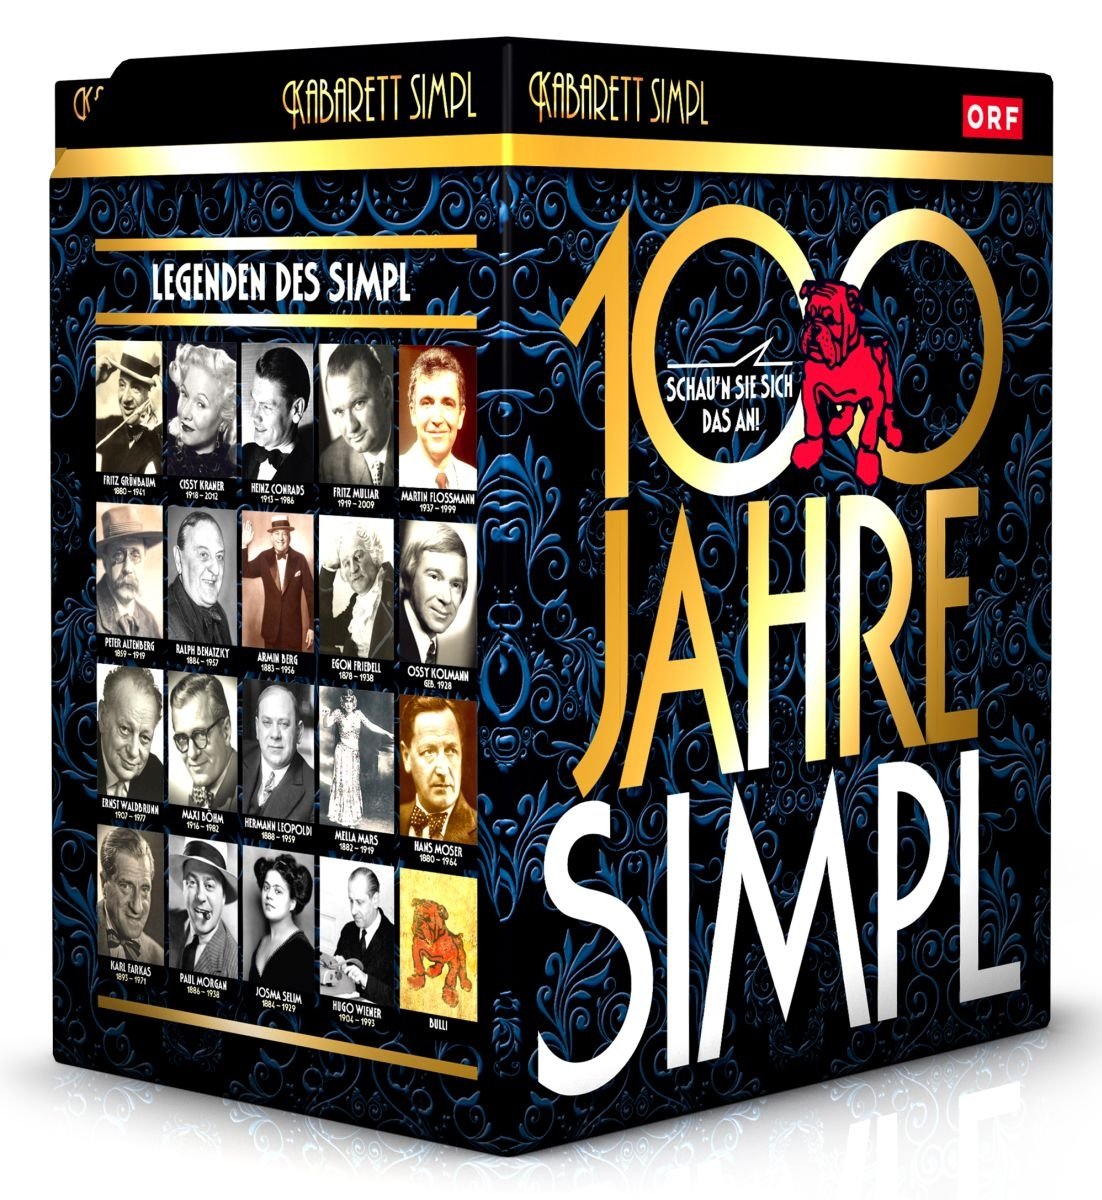 Edition 100 Jahre Simpl: Gesamtausgabe Teil 1-20 [20 DVDs]